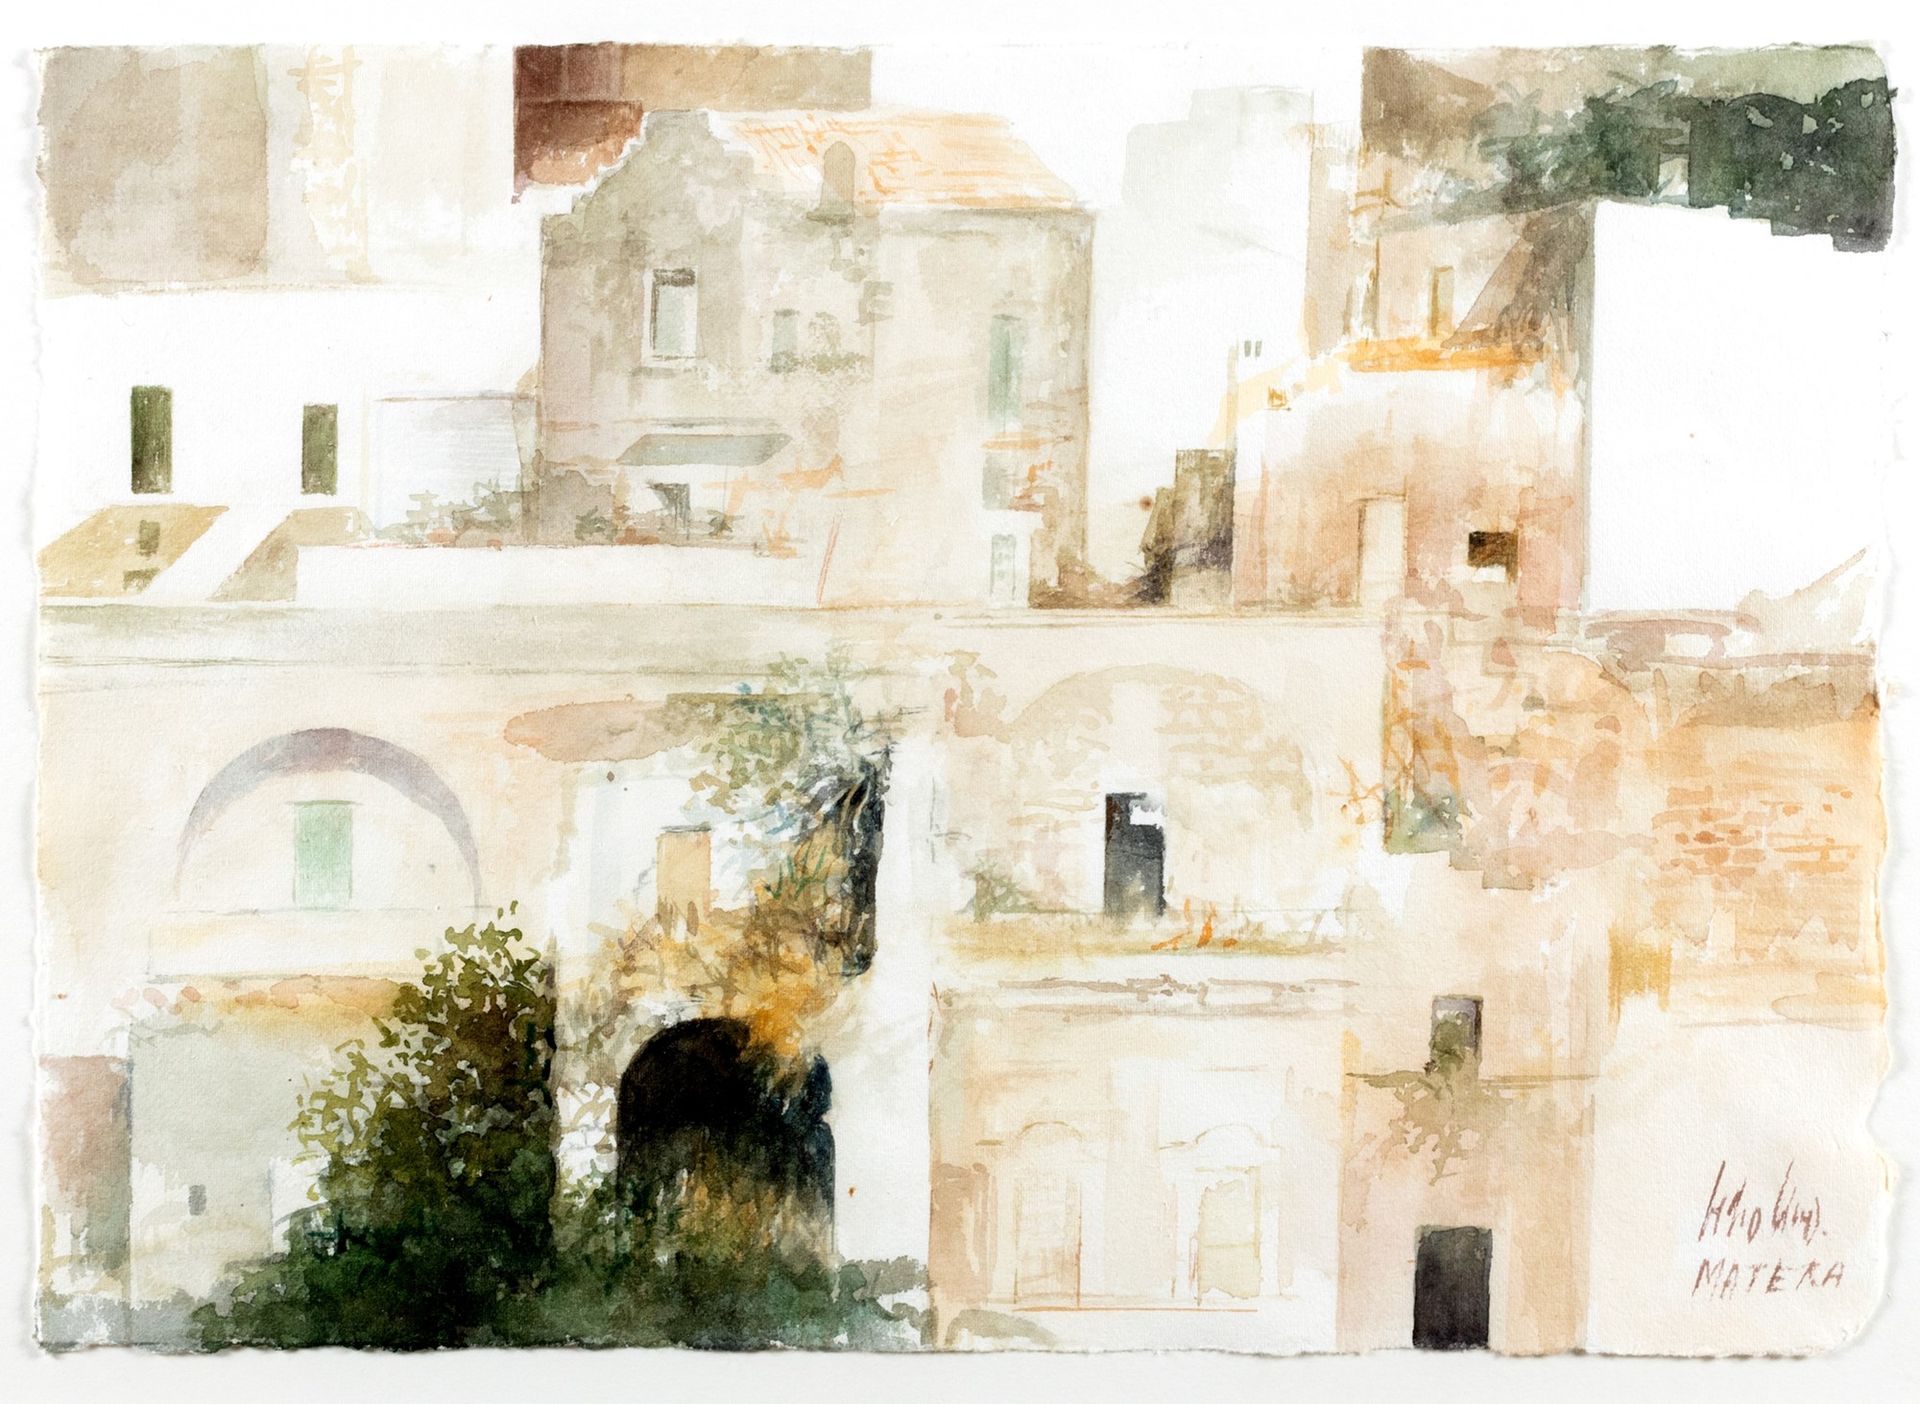 Pedro Cano Matera

aquarelle sur papier
24,5 x 35 cm
Signé en bas à droite : Ped&hellip;